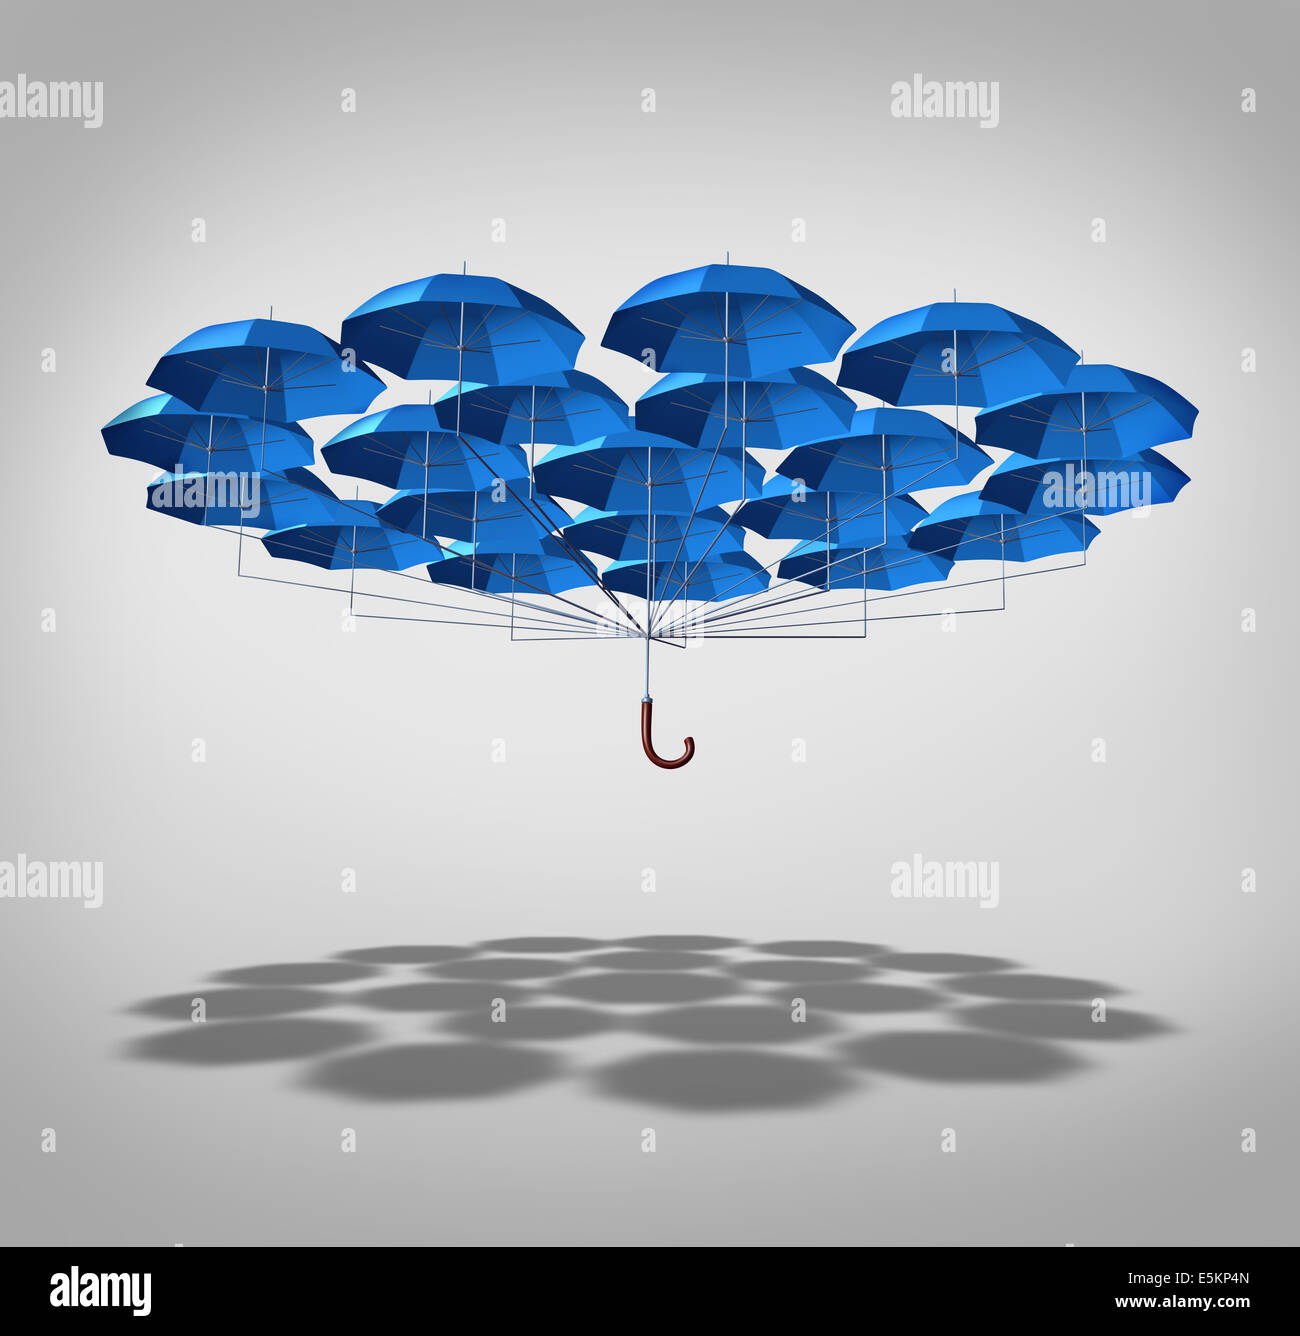 Zusätzliche Sicherheits-Konzept als eine breite Gruppe von blauen Schirme miteinander verbunden wie ein Regenschirm als Symbol für zusätzlichen Schutz. Stockfoto